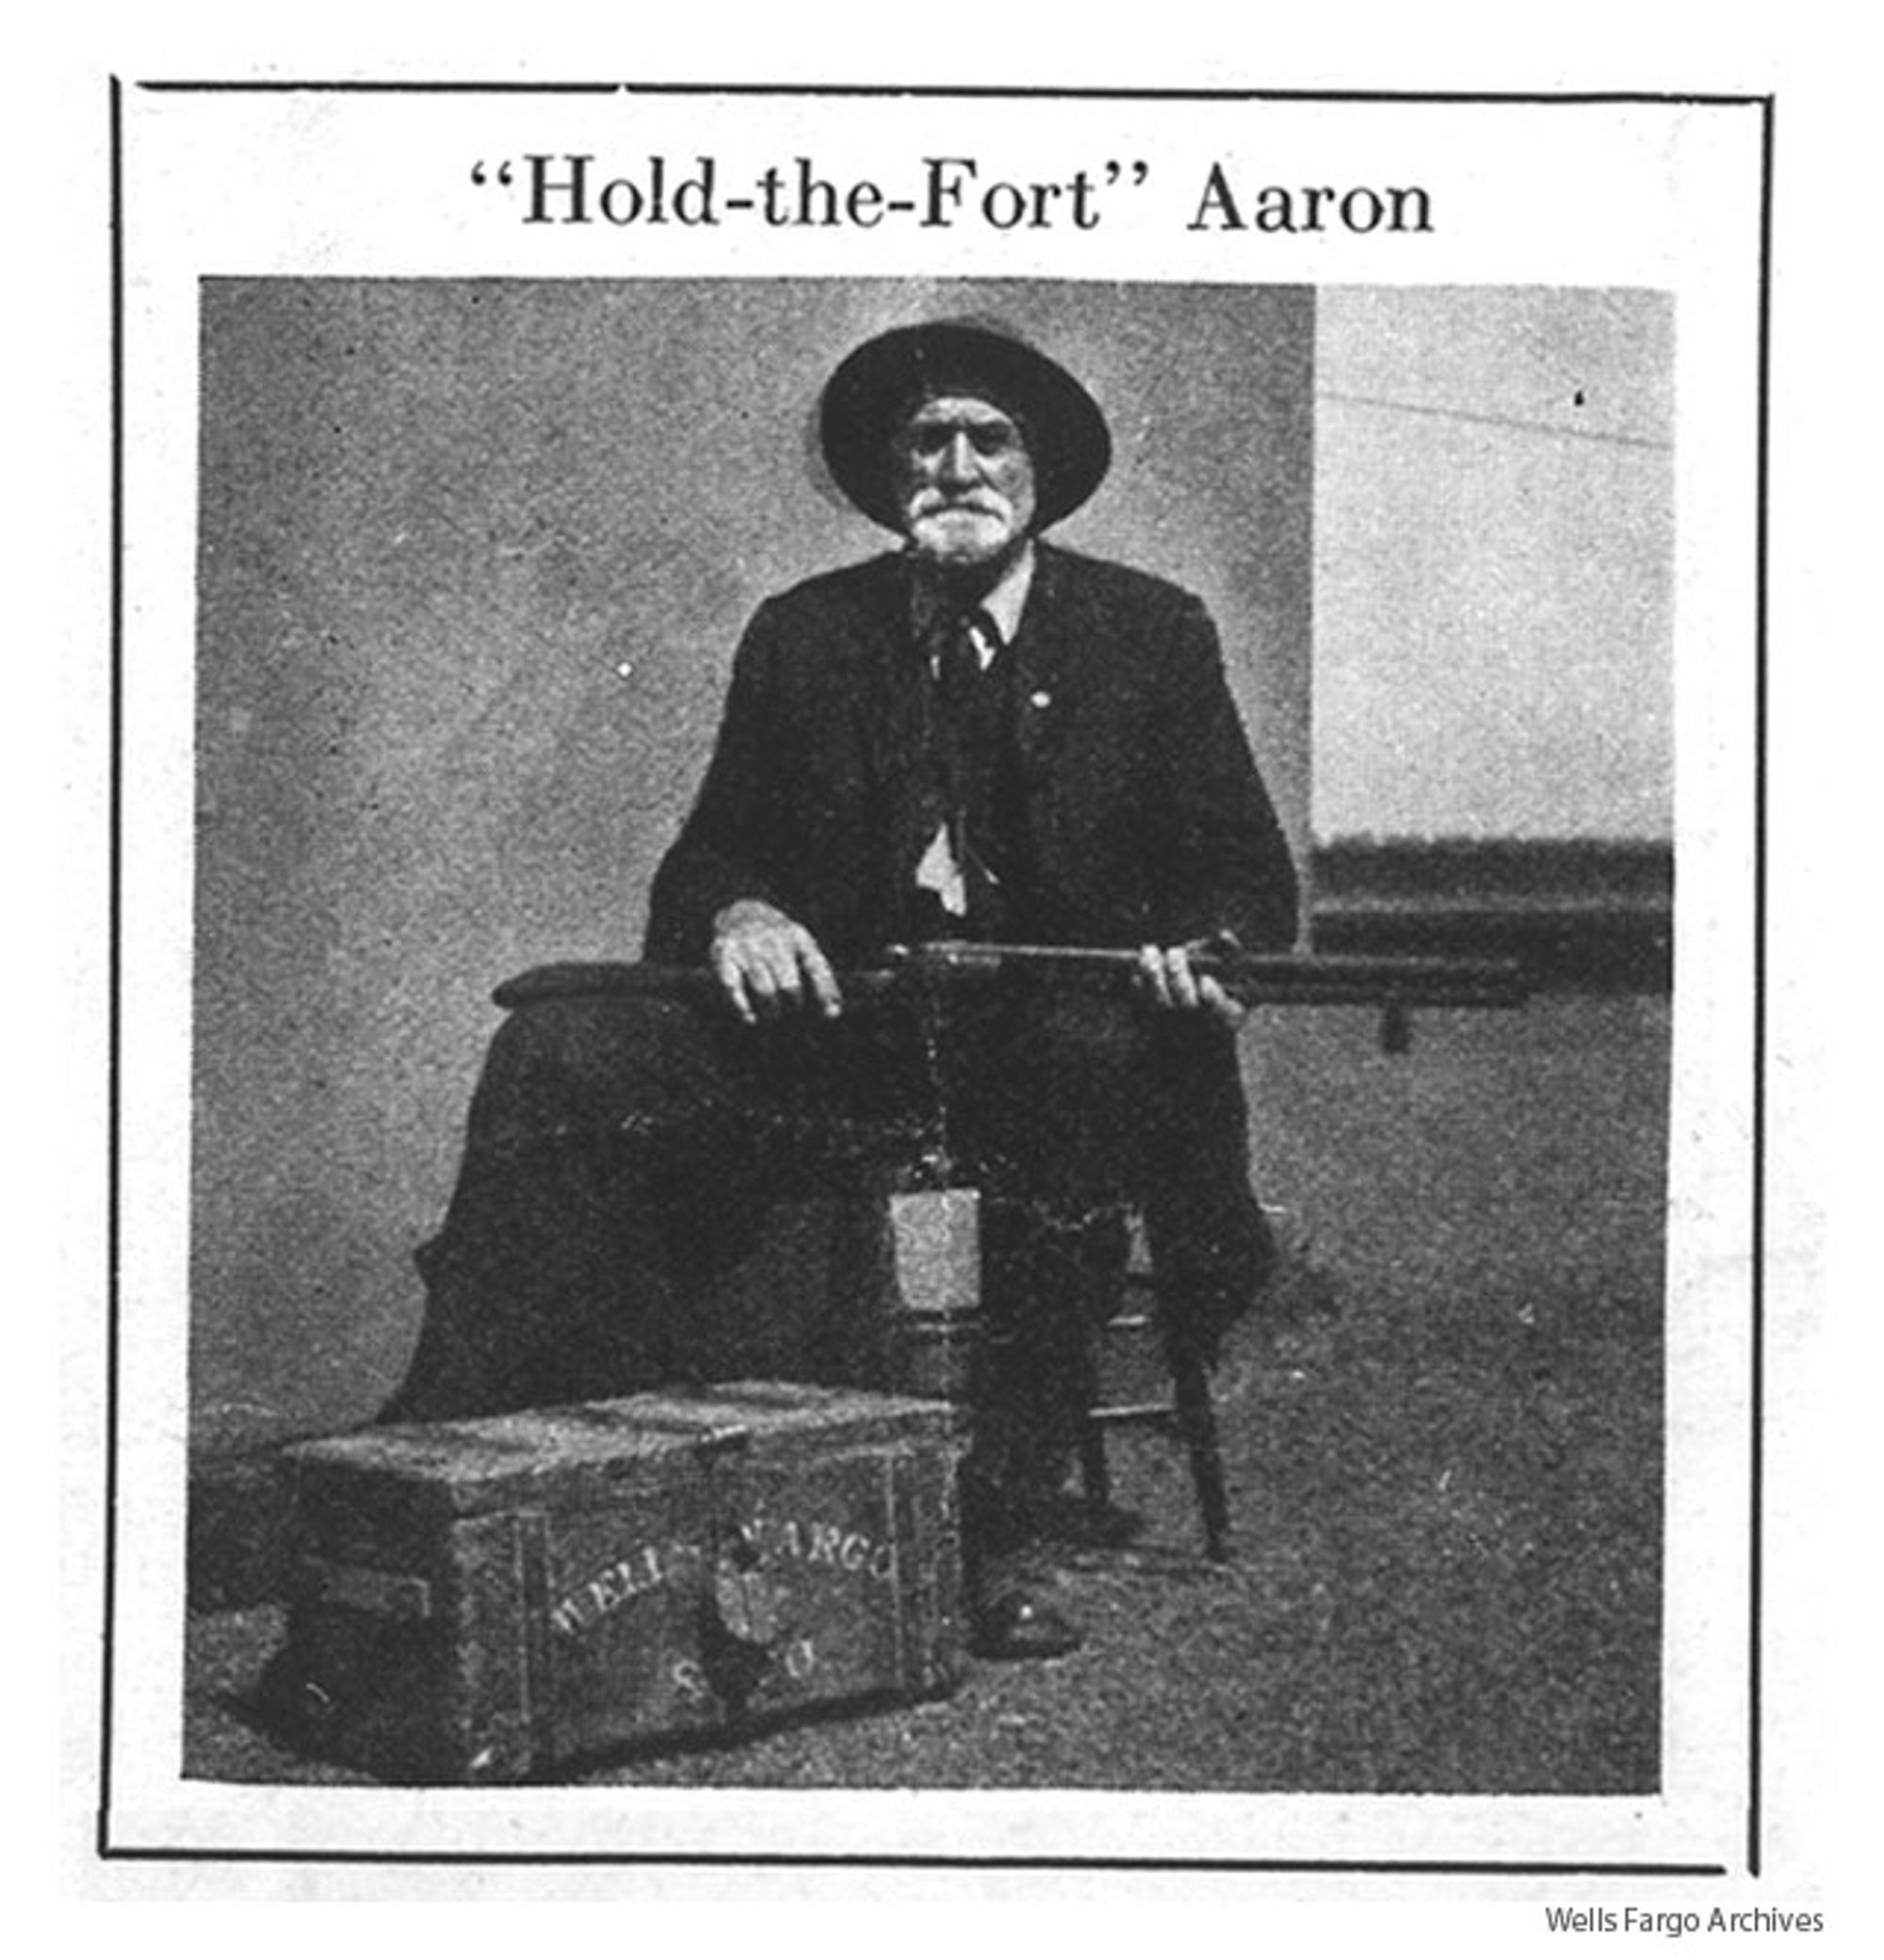 Photo of Aaron Ross, 1922